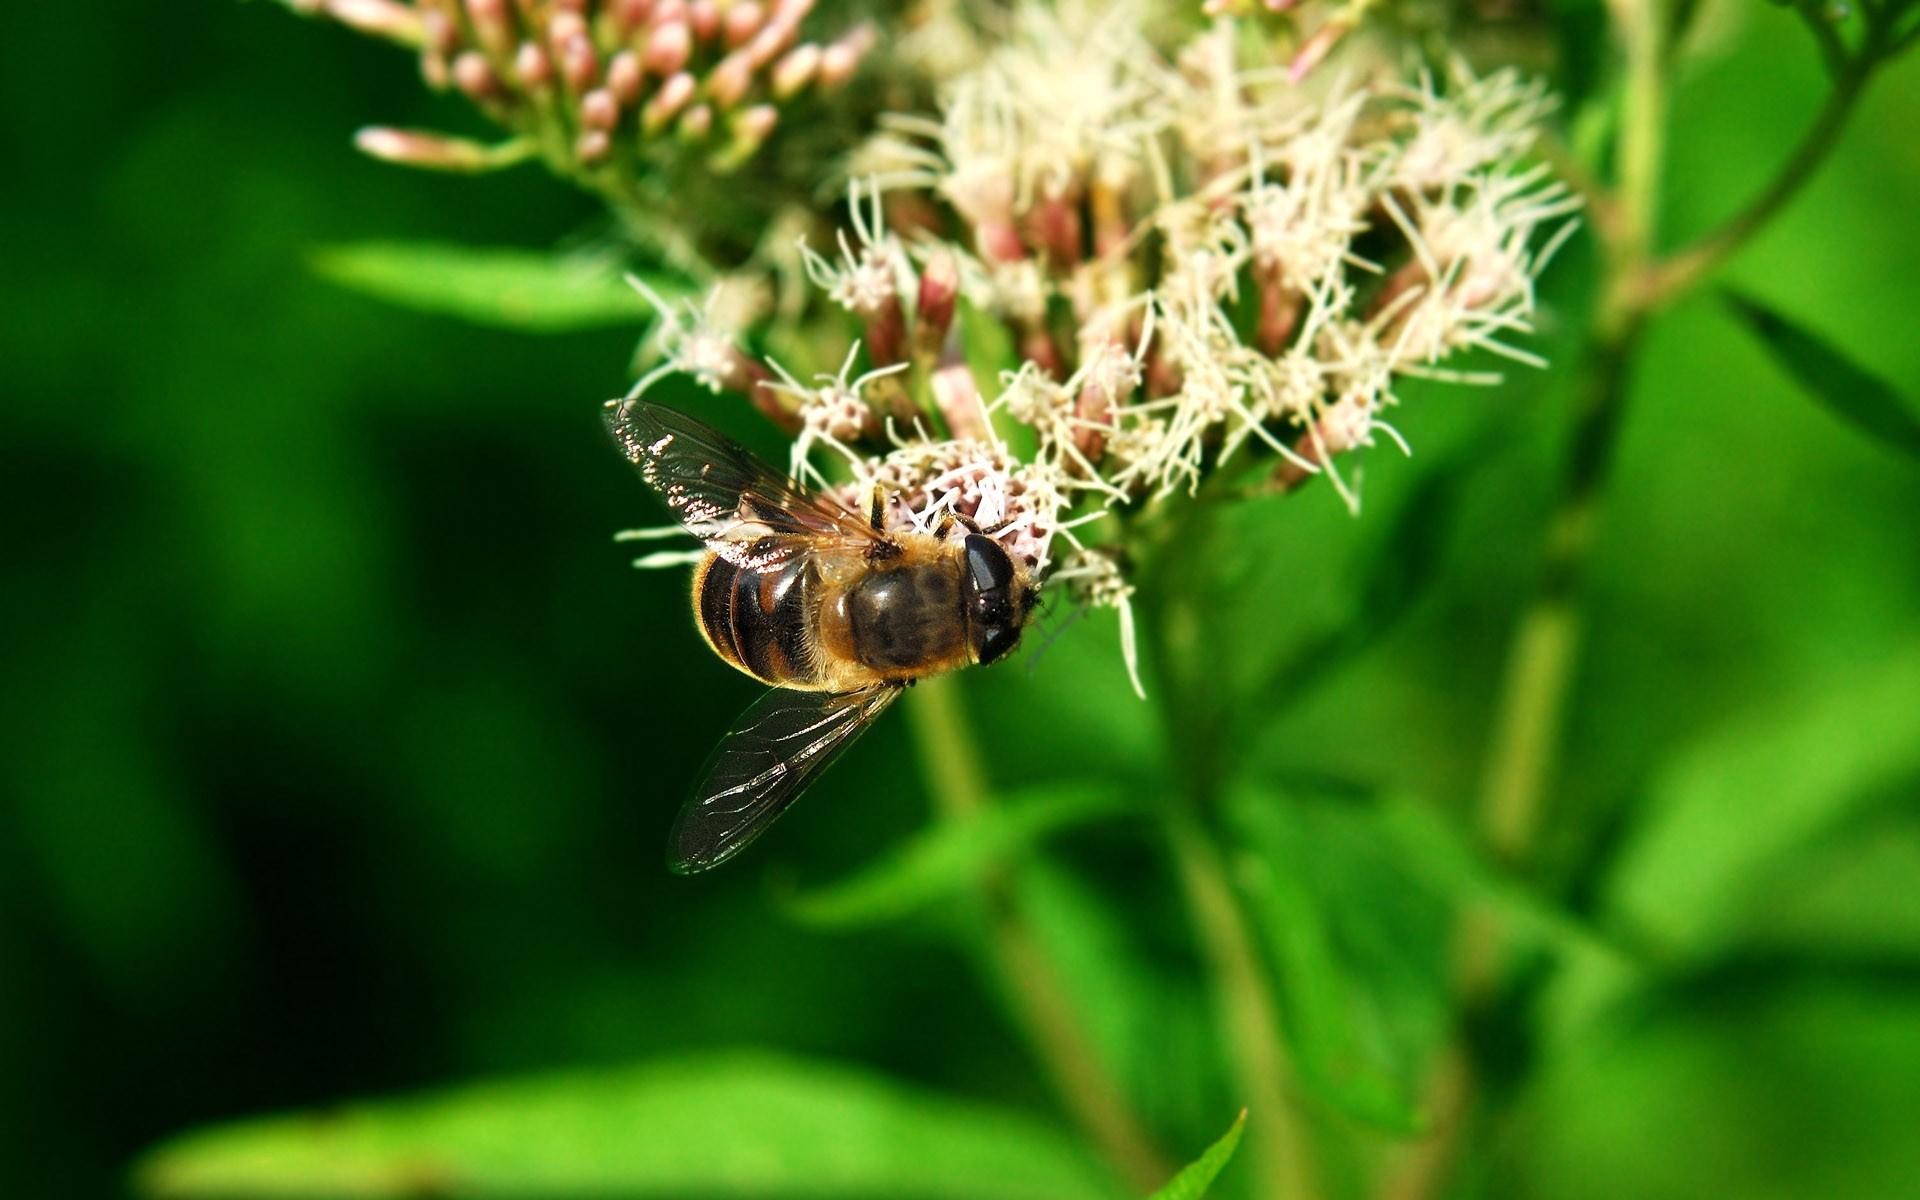 高清蜜蜂采蜜时拍摄的图片大全9